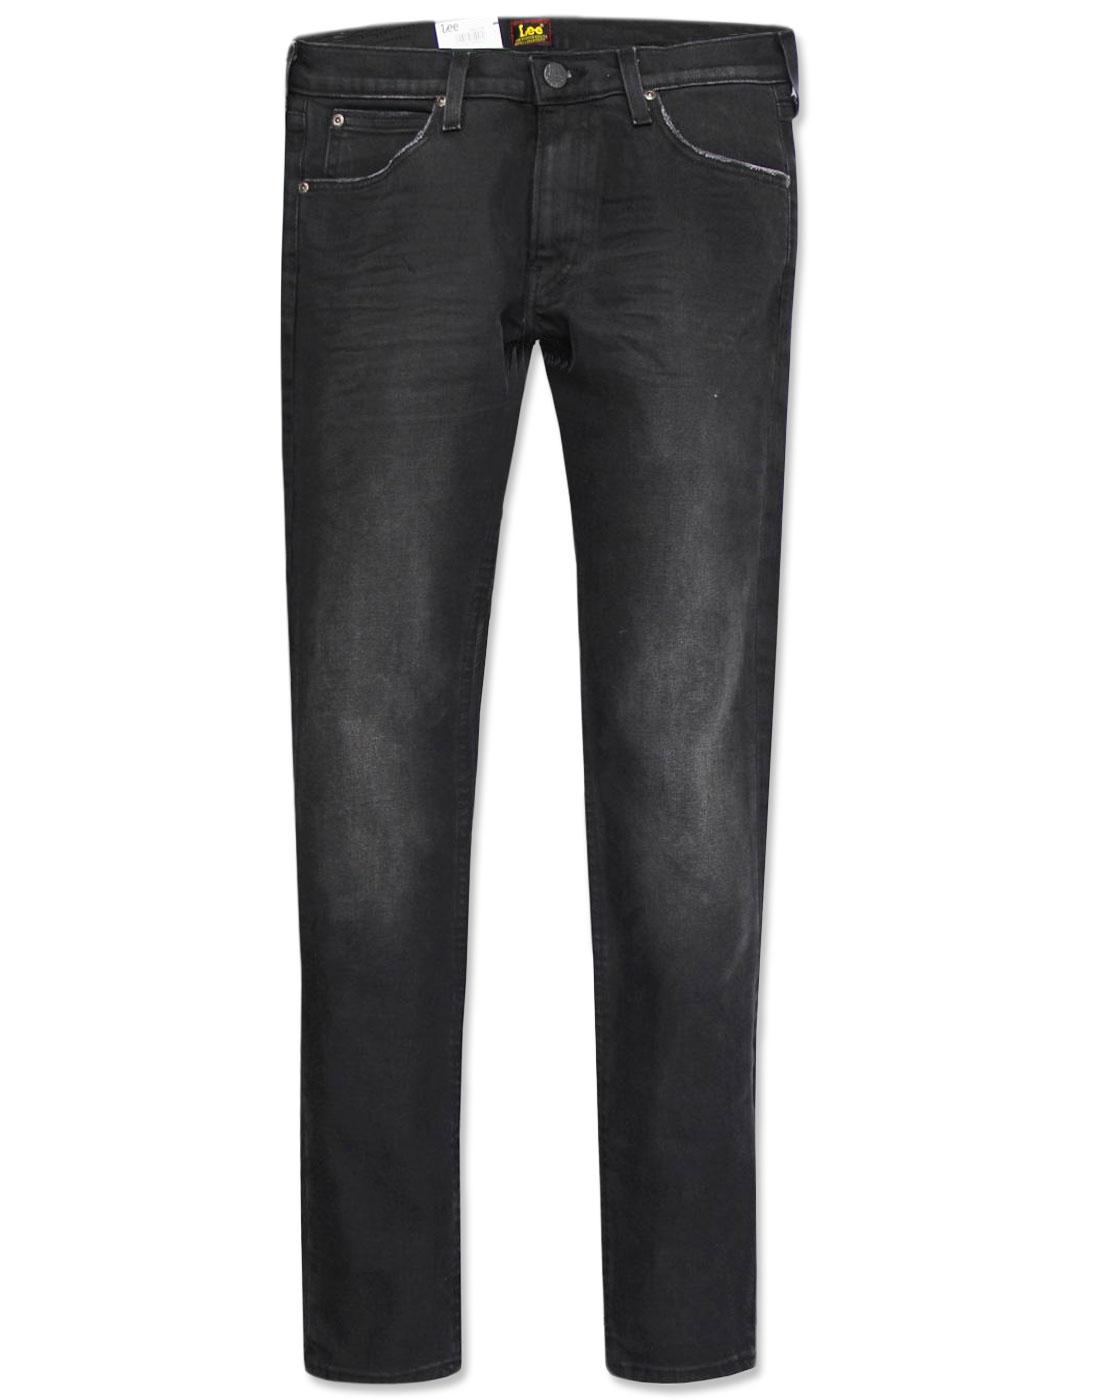 LEE Luke Men's Retro Indie Slim Tapered Denim Jeans in Black Worn